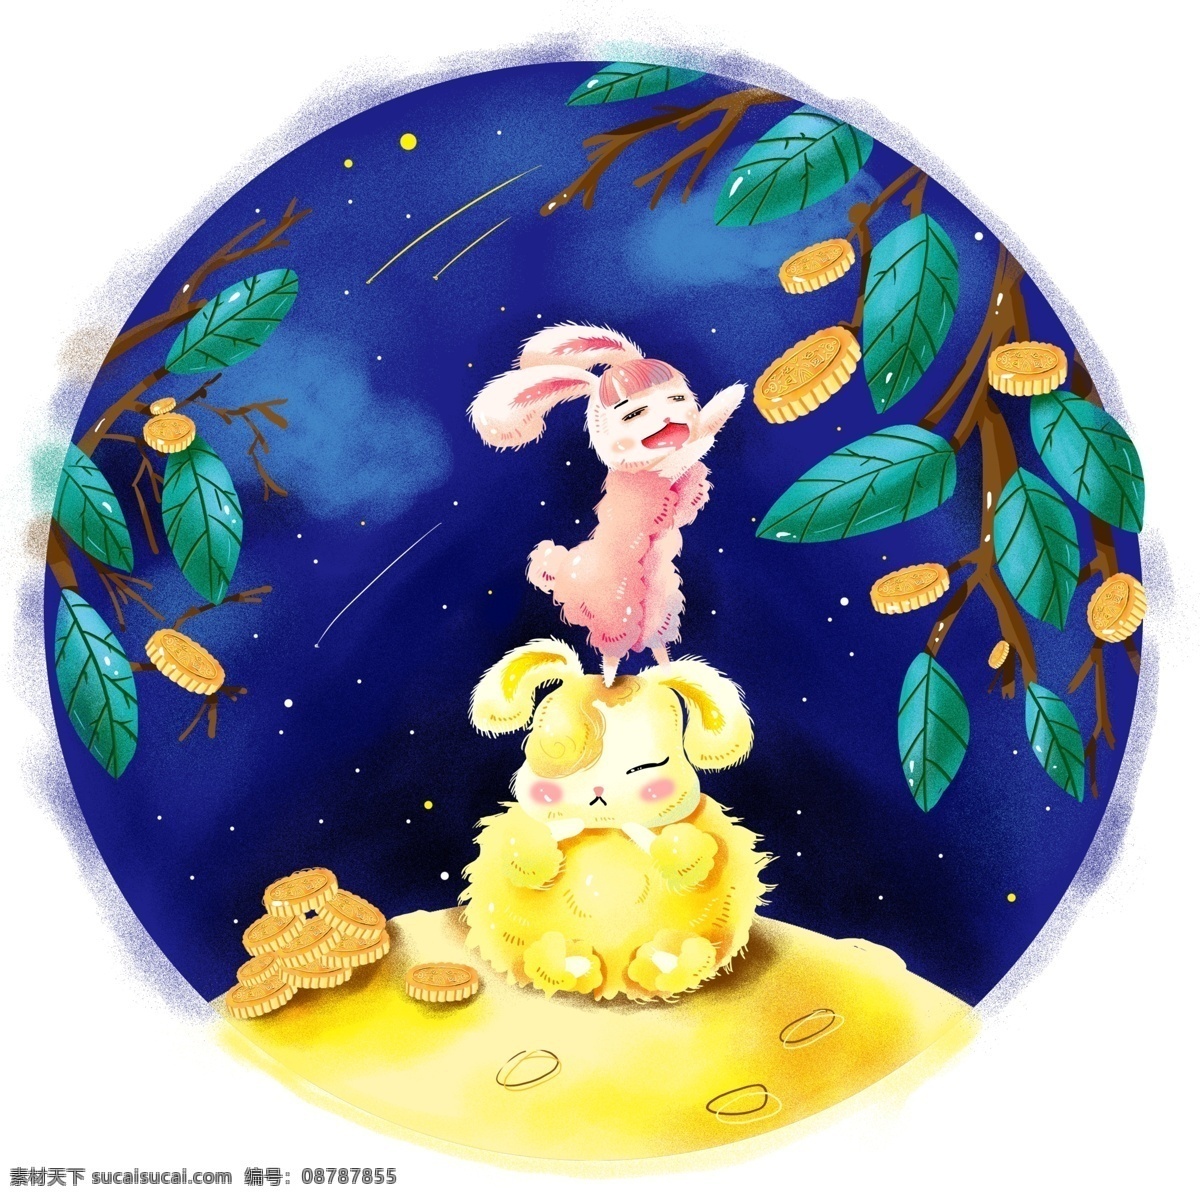 中秋节 玉兔 摘 月饼 月桂树 插画 手绘 节日 海报素材 摘月饼